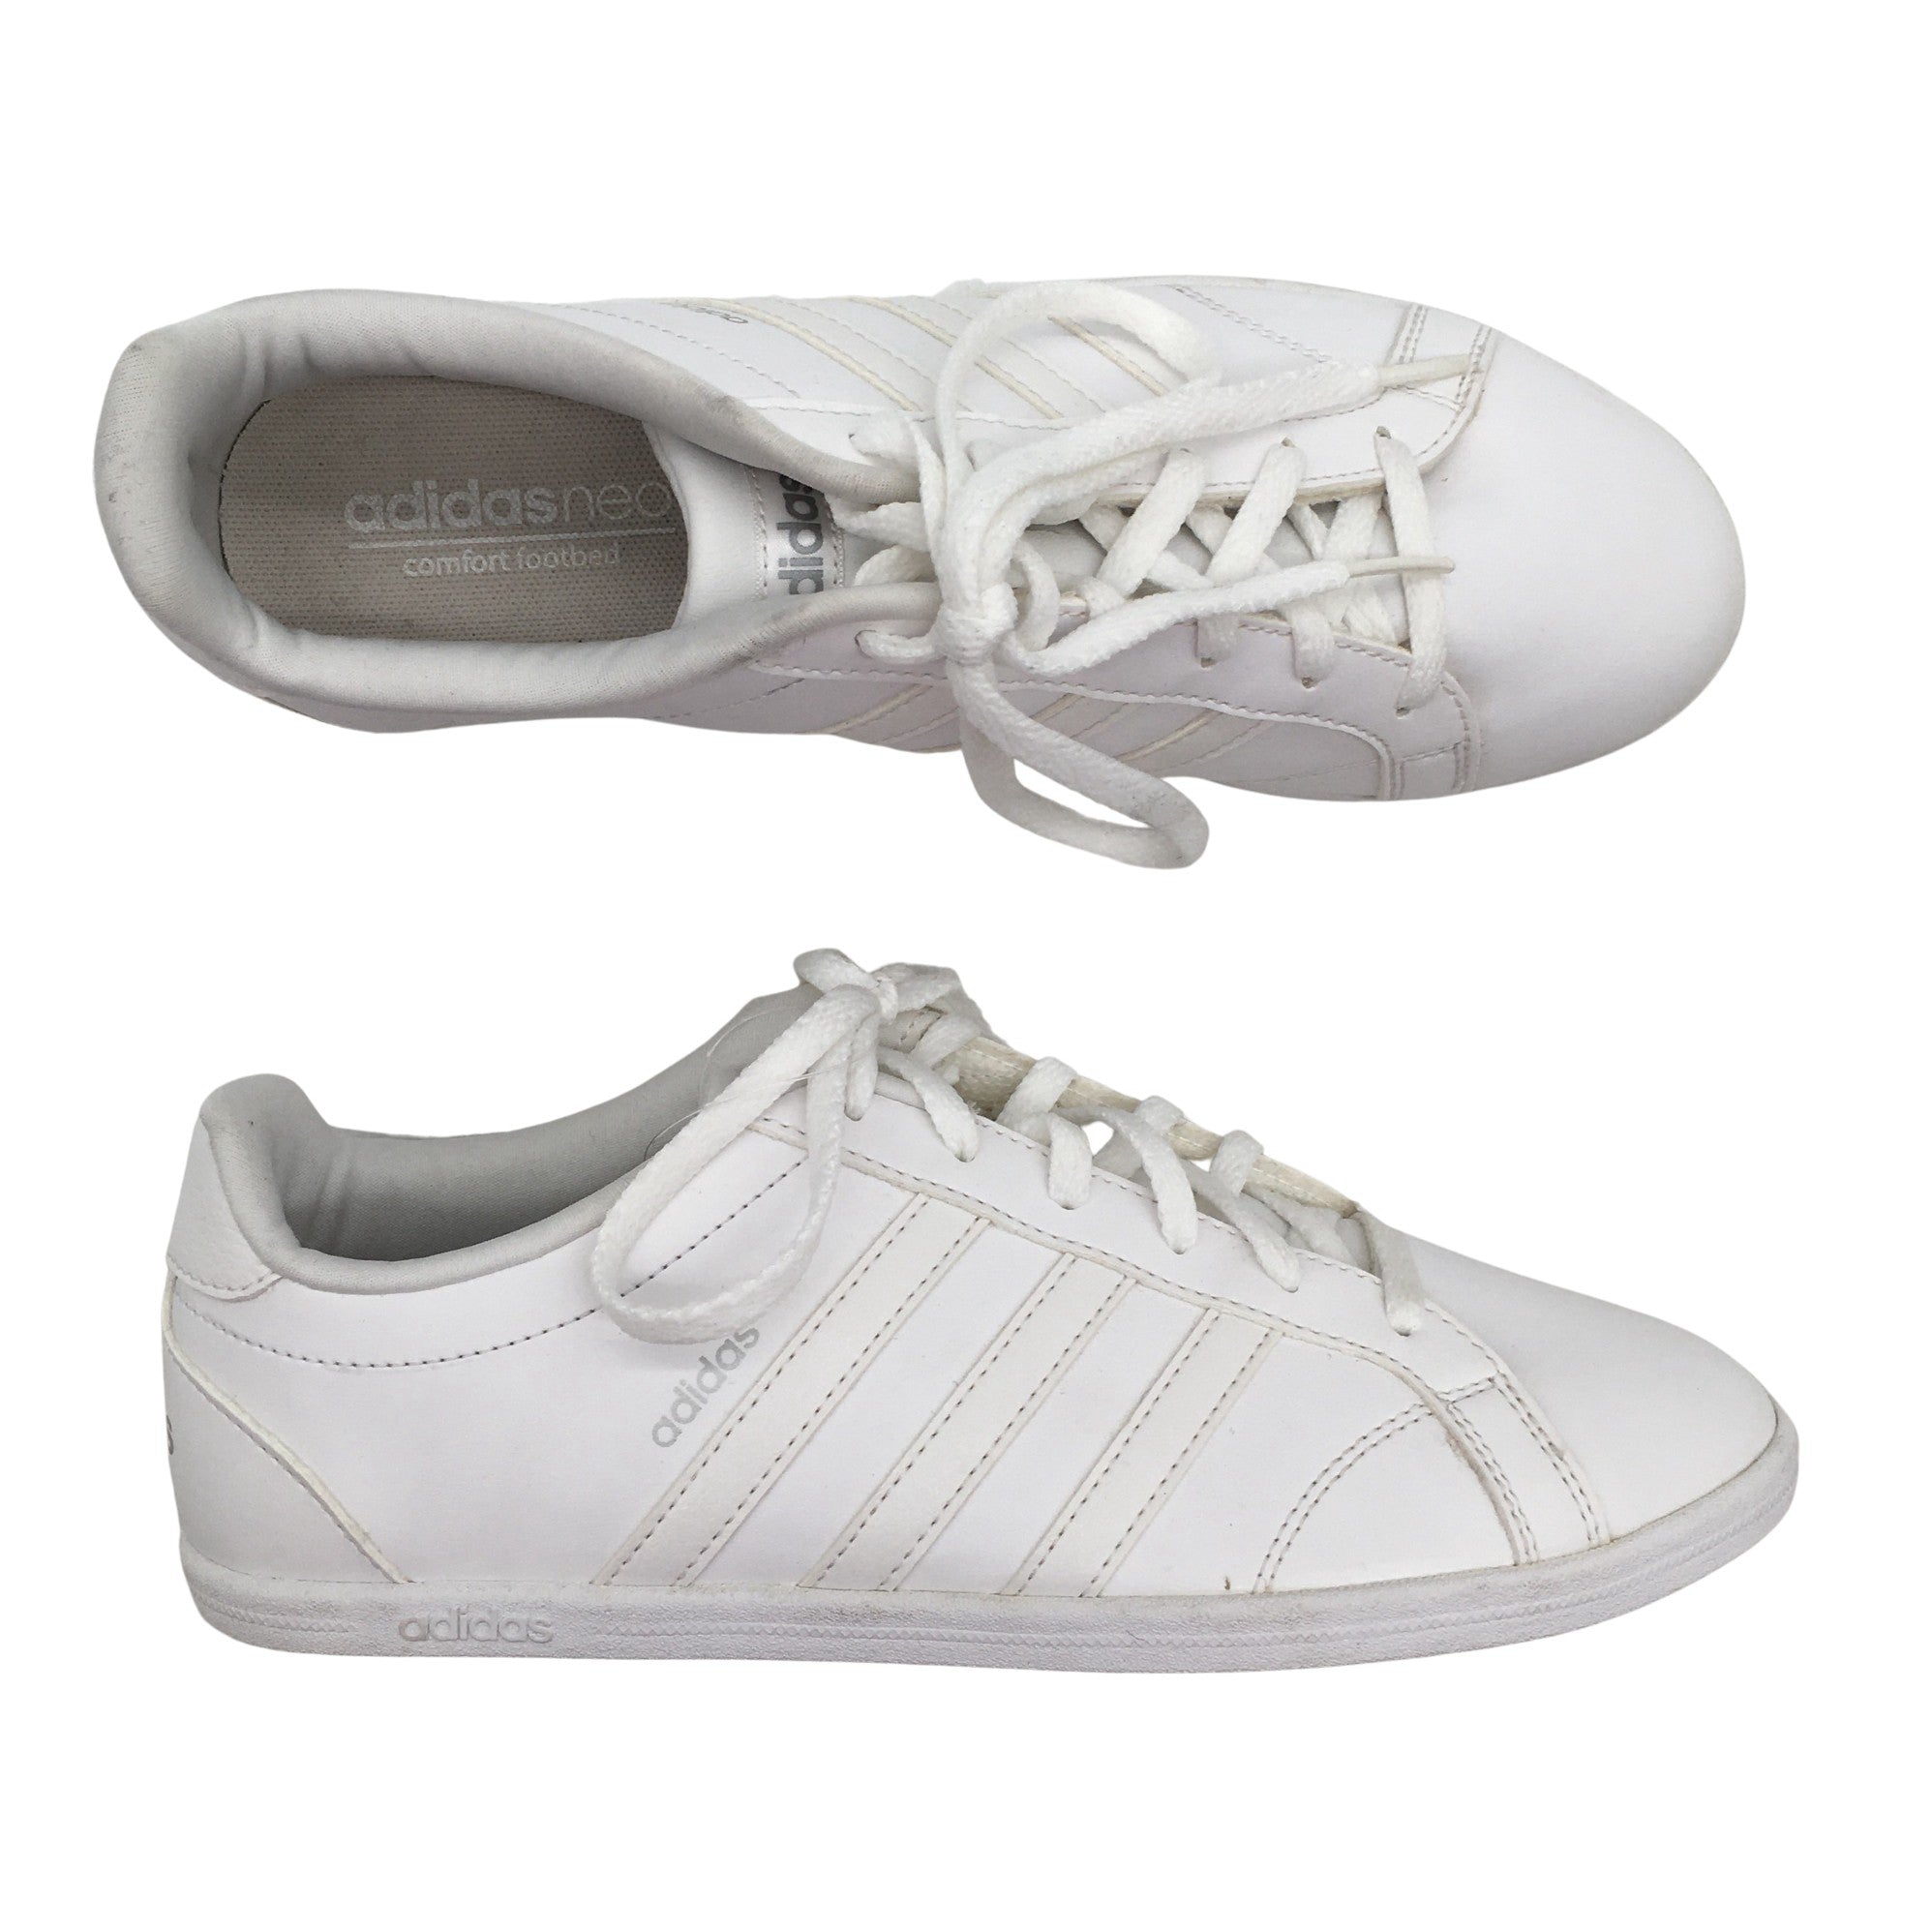 testigo Tiempos antiguos Amanecer Women's Adidas Casual sneakers, size 38 (White) | Emmy